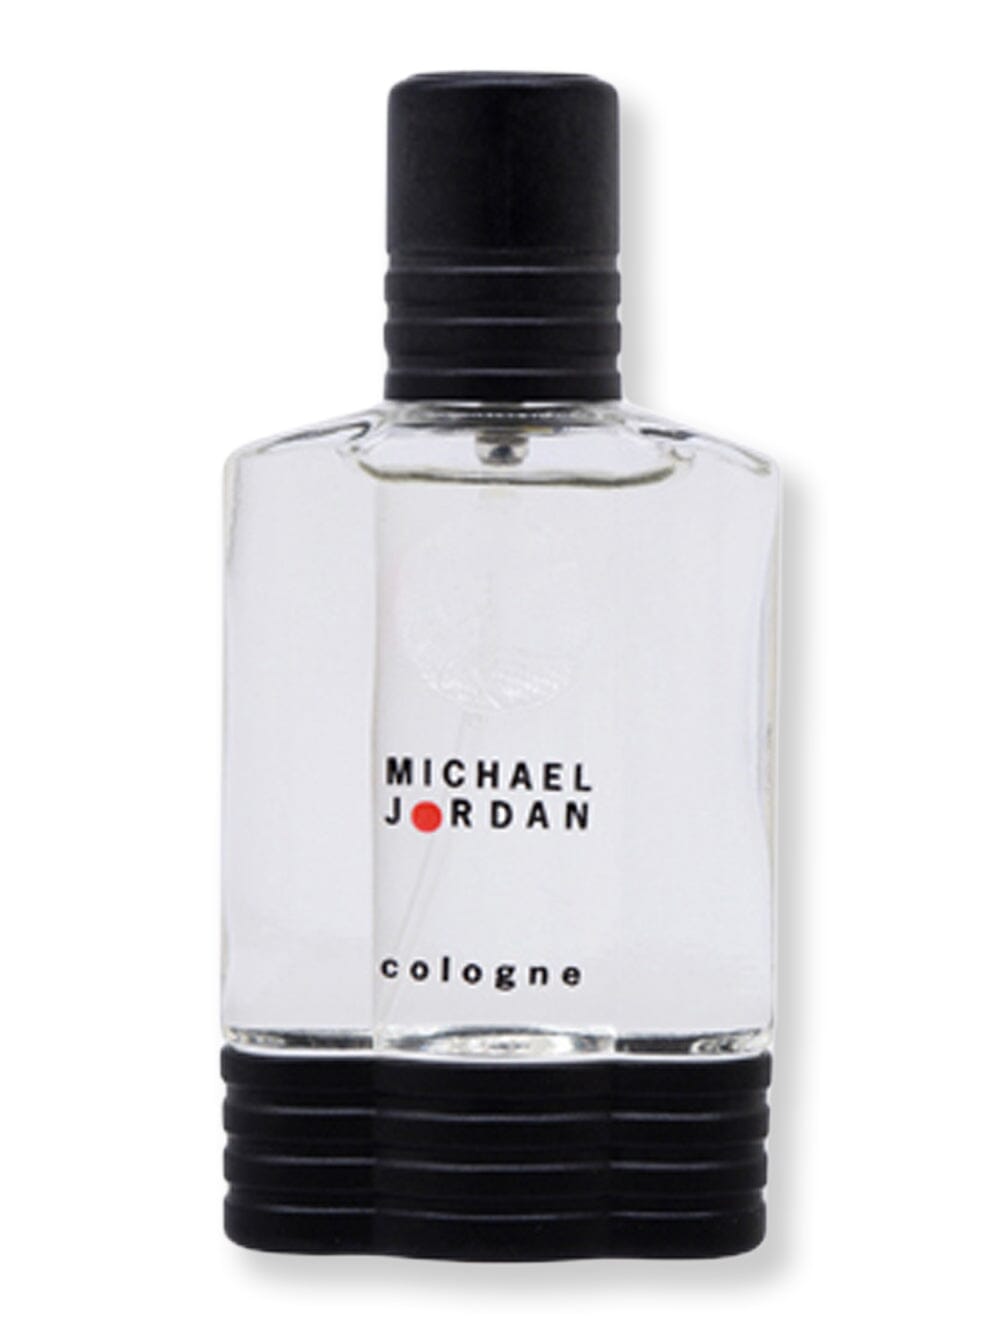 Michael Jordan Michael Jordan Cologne Spray 0.5 oz15 ml Cologne 